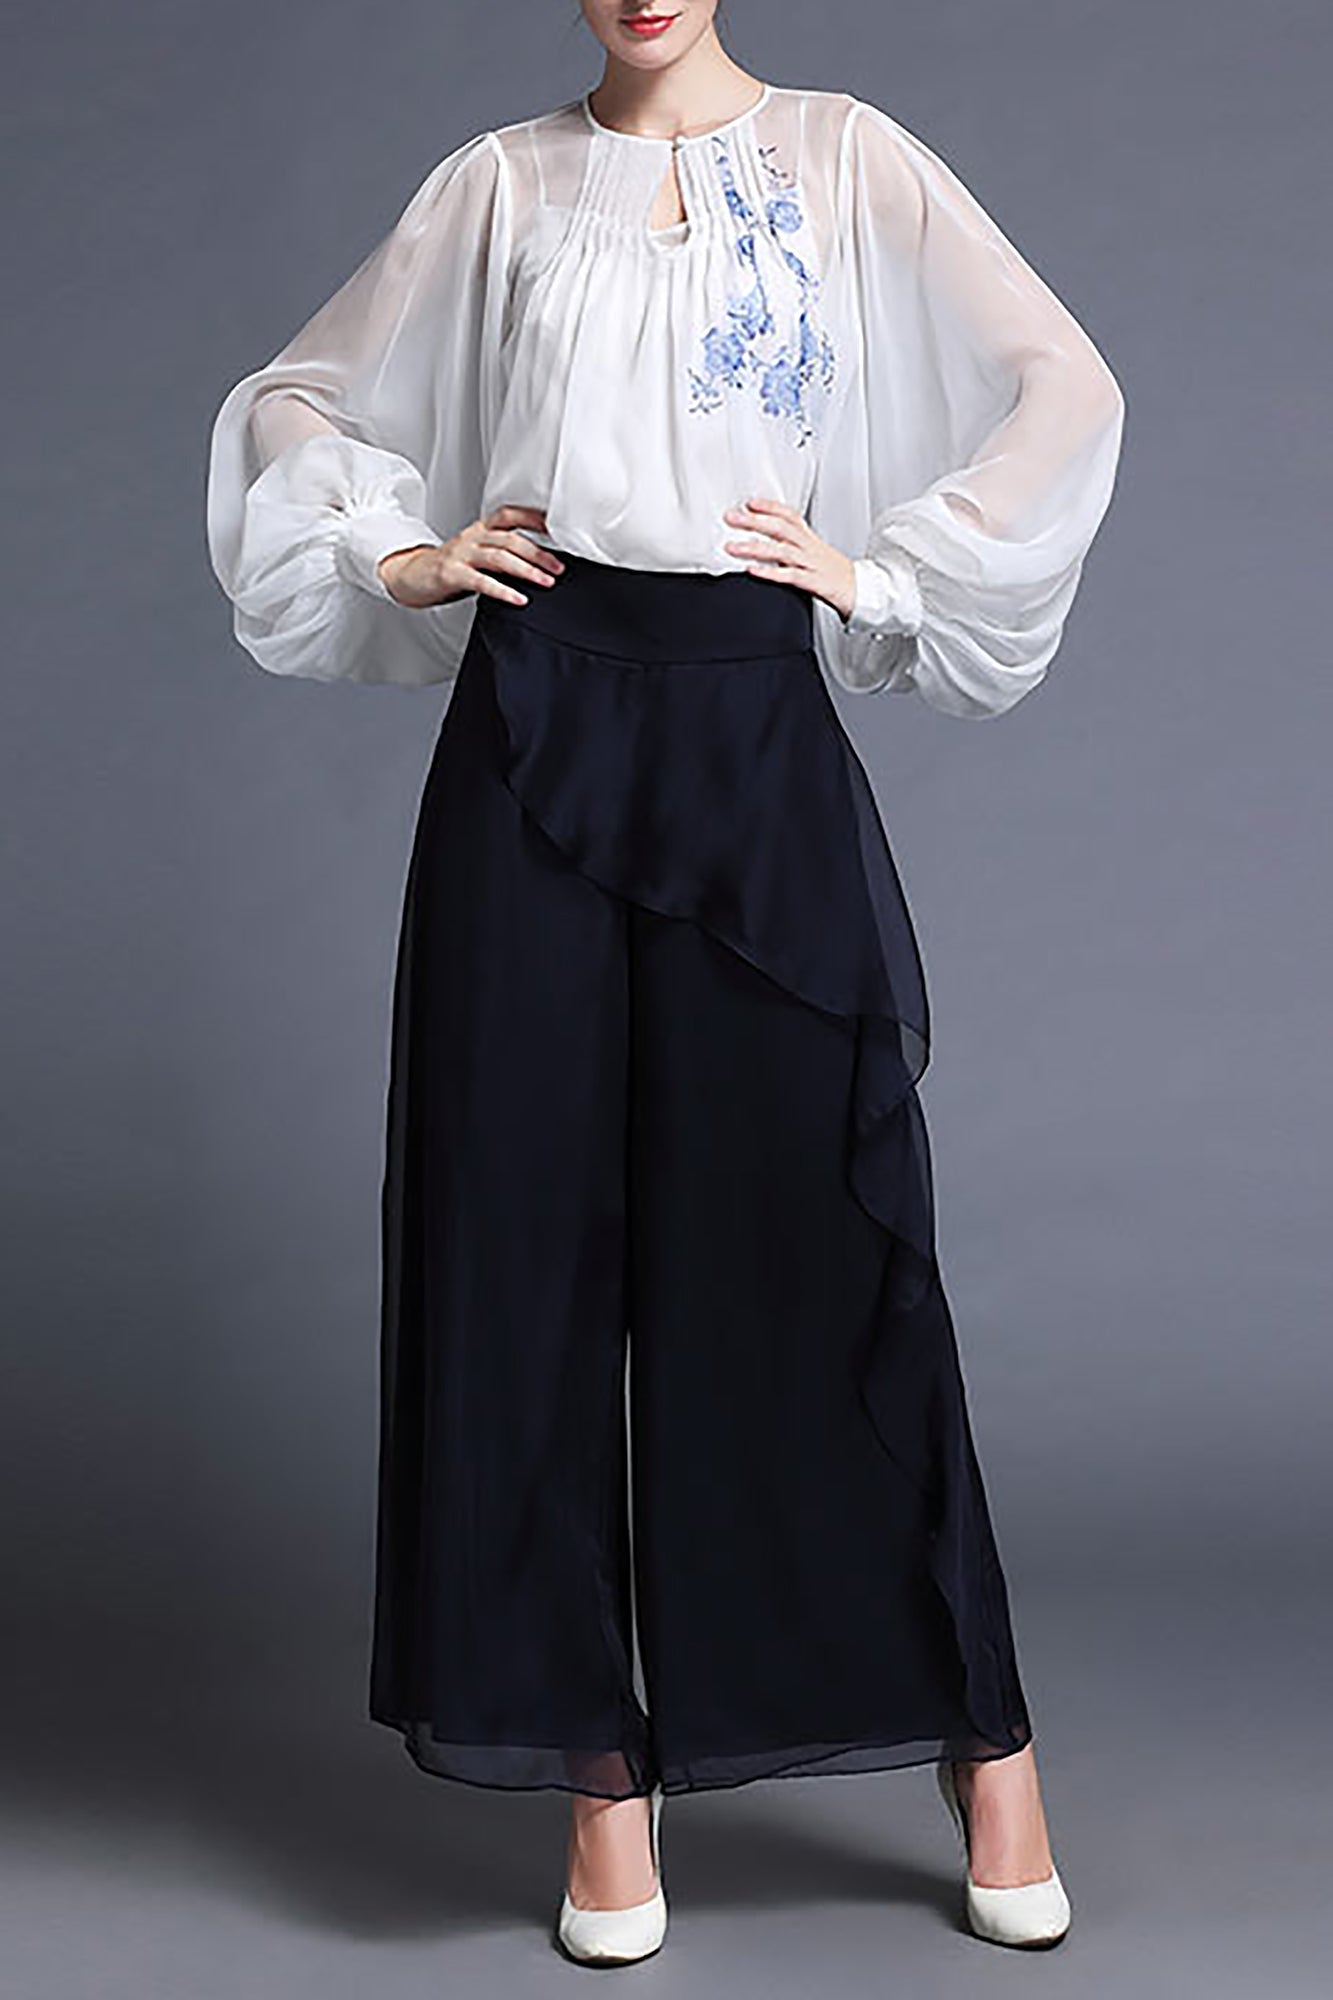 DL Fusion Ellen Porcelain Chiffon White Blouse/Shirt & Pants - Summer, Porcelain Shirt, Best Selling